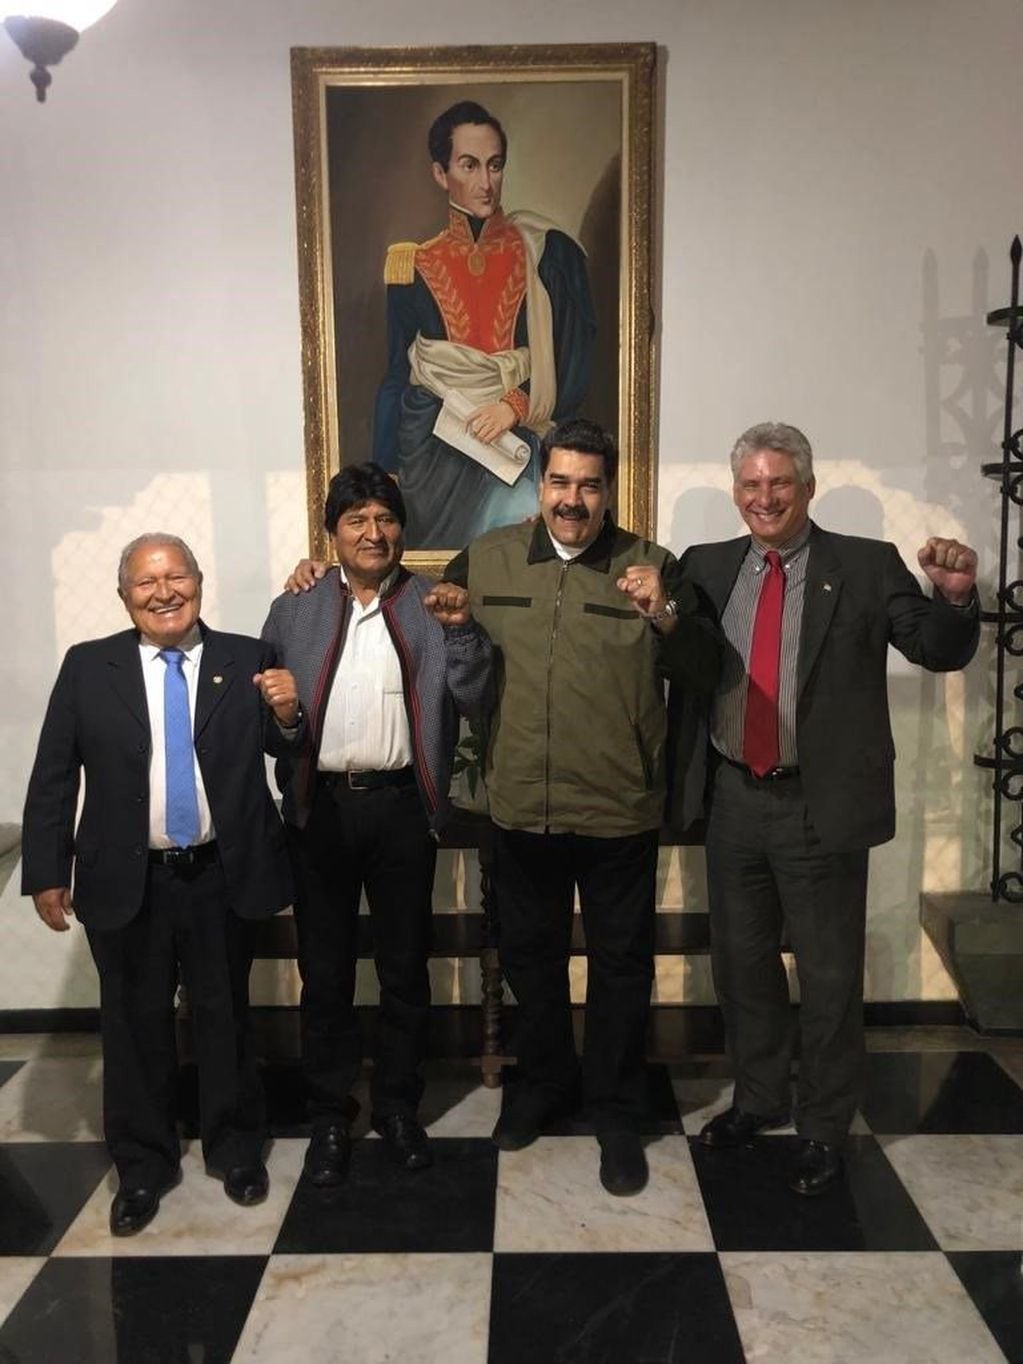 Fotografía de la cuenta oficial de Twitter del presidente Cuba Miguel Díaz-Canel donde aparece acompañado por Nicolás Maduro, Salvador Sánchez Céren, Evo Morales.